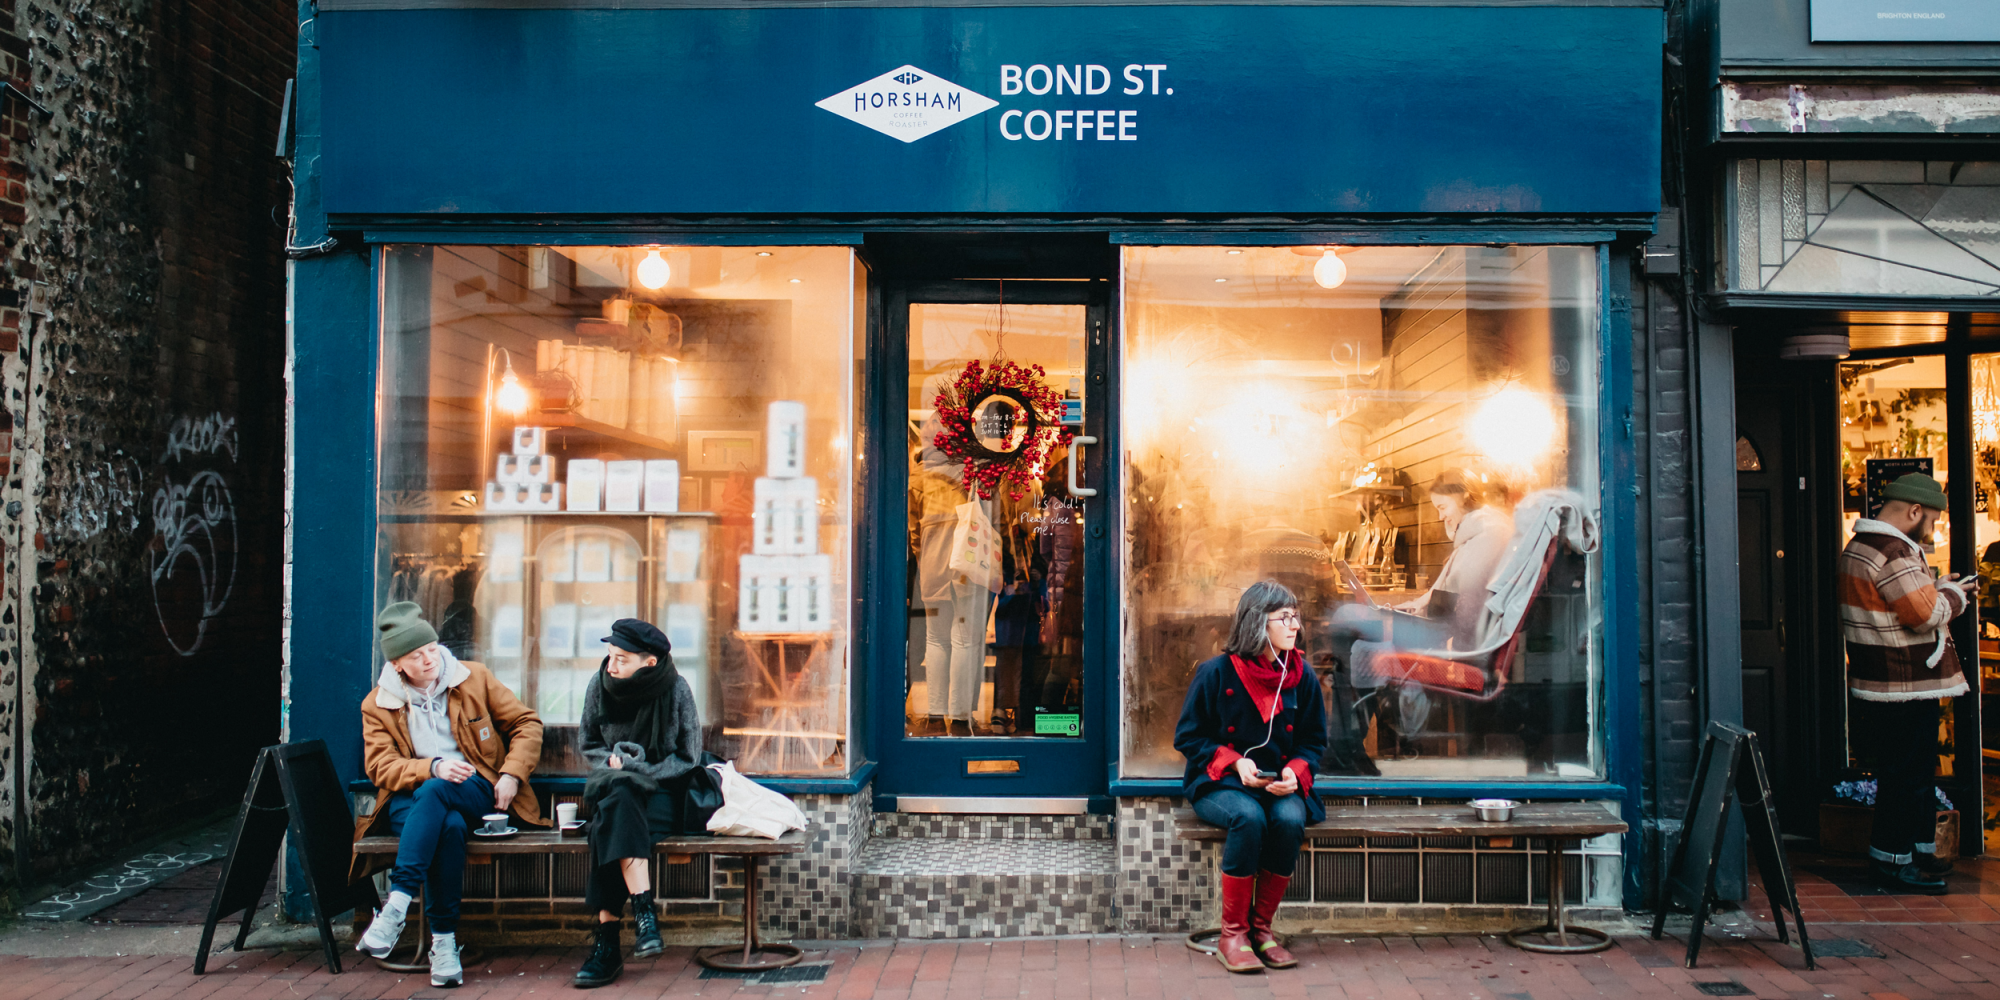 Bond St. Coffee